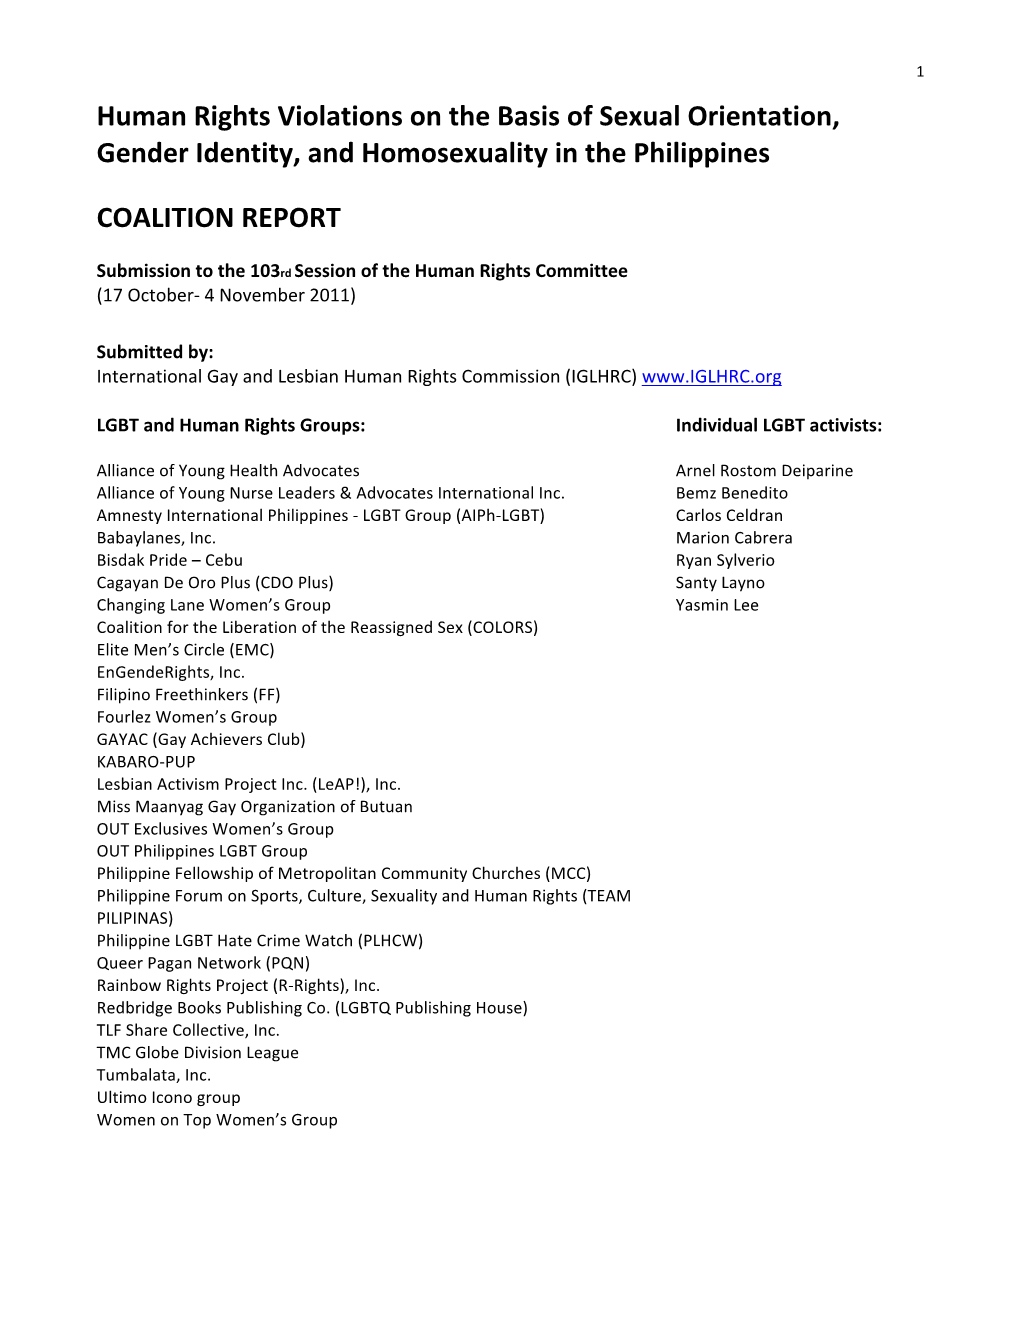 ICCPR Philippines LGBT CSO Report 01Dec2011